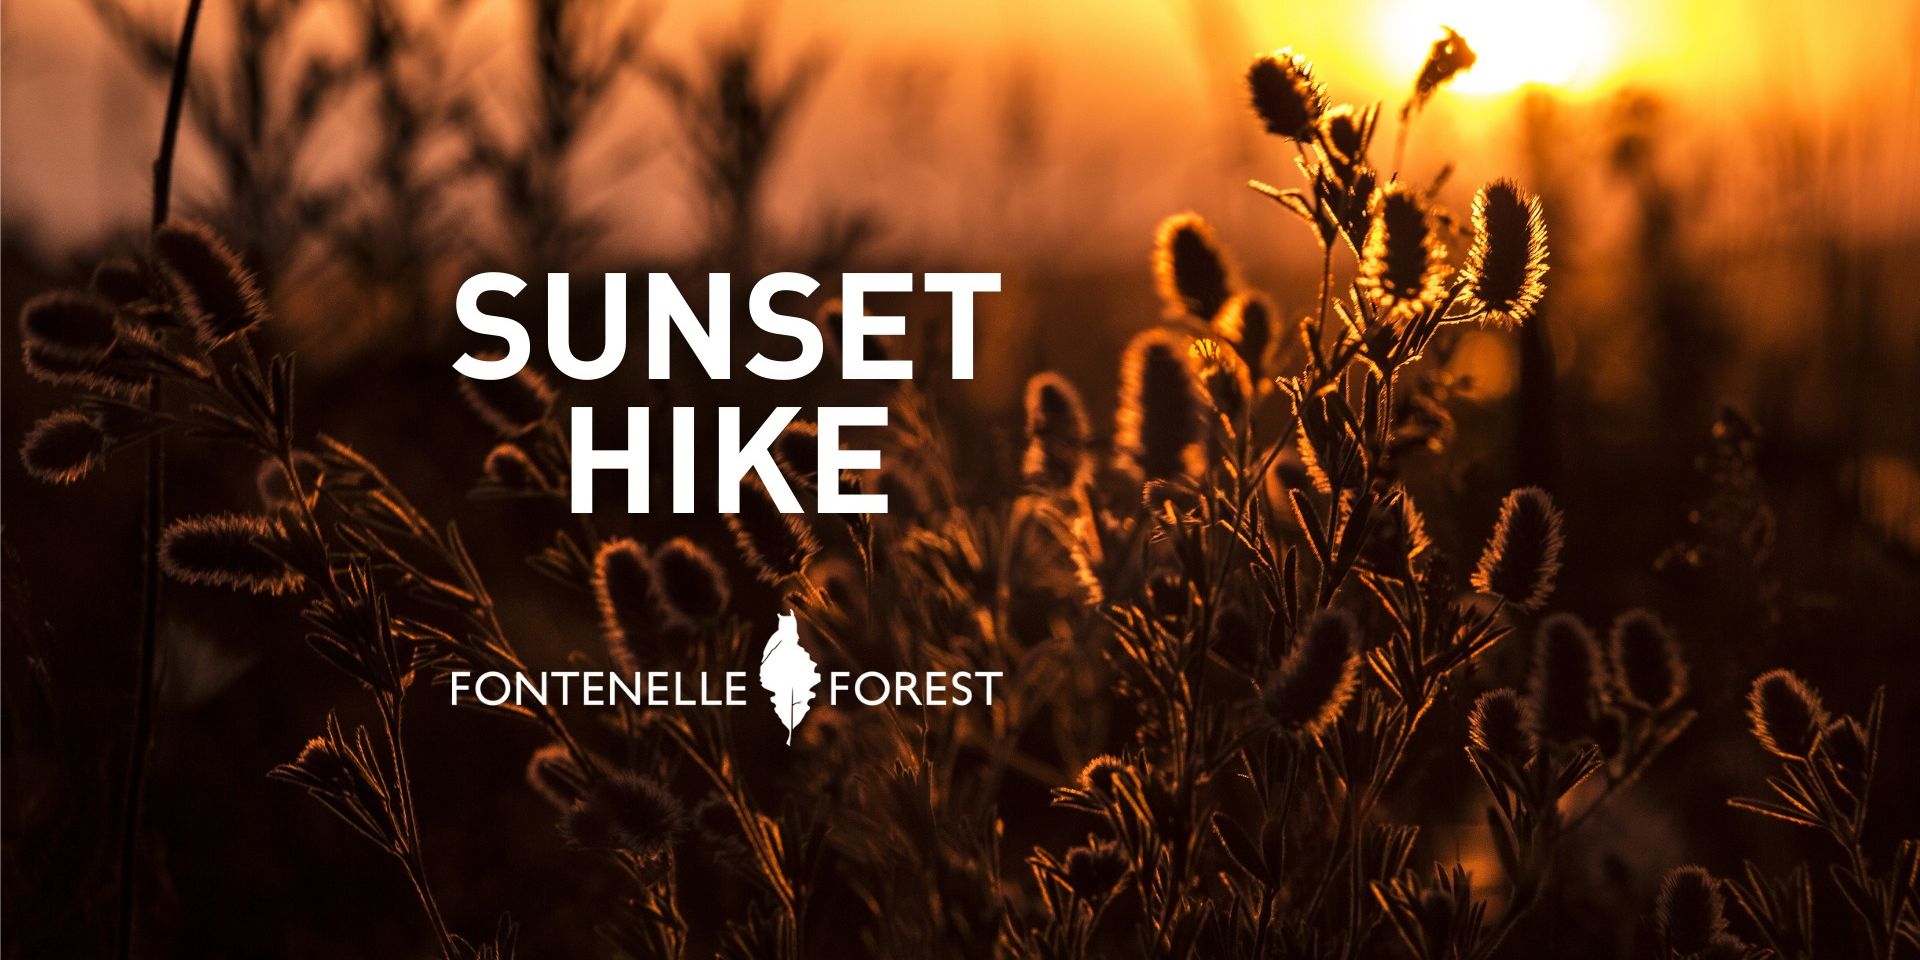 Sunset Hike promotional image